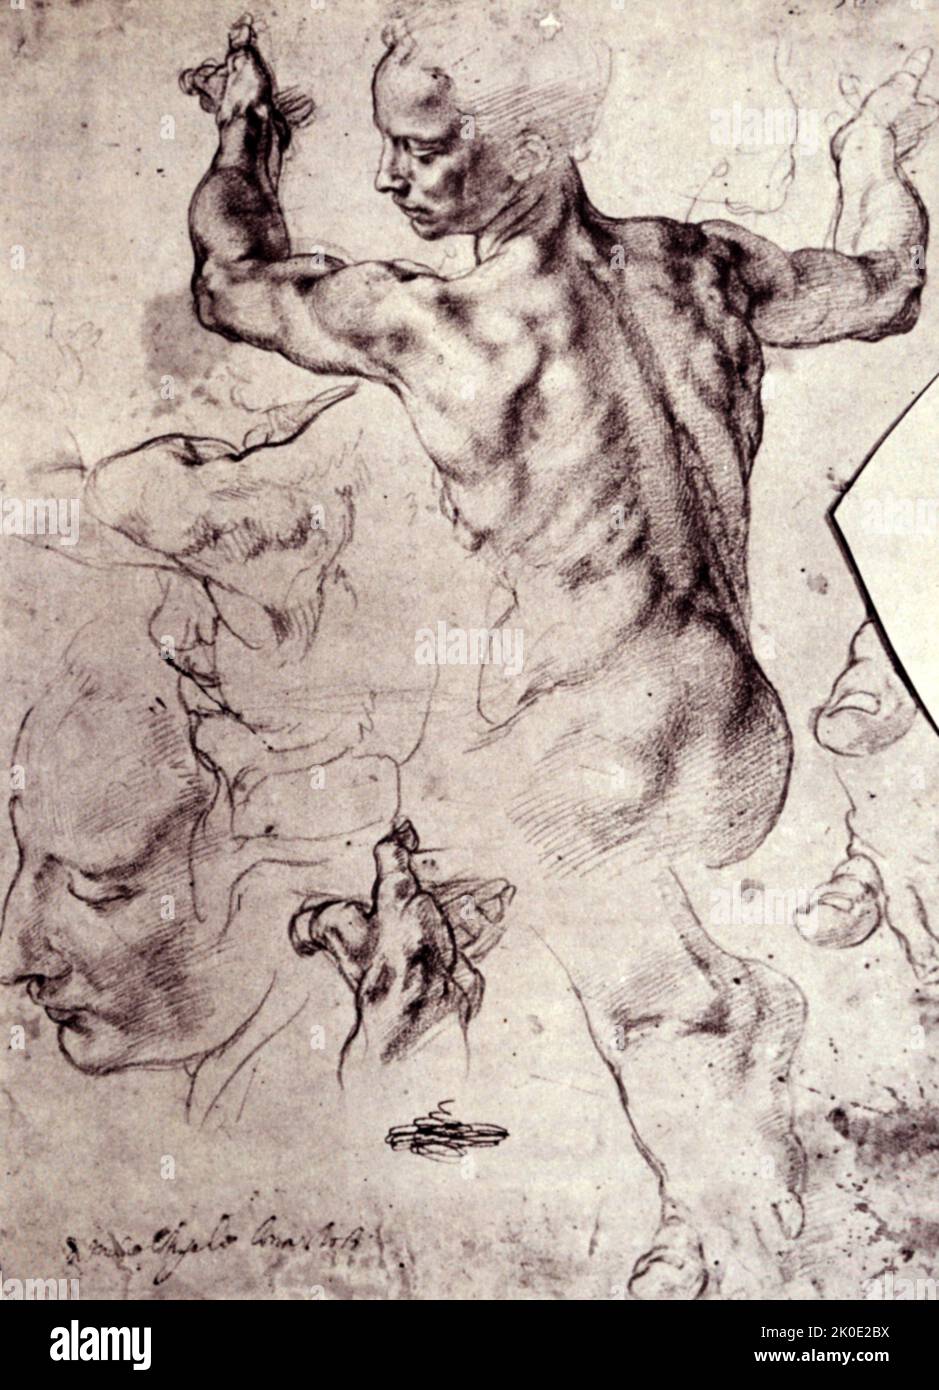 Studien für die libysche Sibyl und eine kleine Skizze für eine sitzende Figur (rückseitig) ca. 1510-11. Dieses doppelseitige Blatt mit genau beobachteten Lebensstudien ist die prächtigsten Zeichnungen von Michelangelo in Nordamerika, die am 8. August 1924 vom Metropolitan Museum of Art erworben wurde. Michelangelo di Lodovico Buonarroti Simoni (6. März 1475 - 18. Februar 1564), einfach als Michelangelo bekannt, war ein italienischer Bildhauer, Maler, Architekt und Dichter der Hochrenaissance. Stockfoto